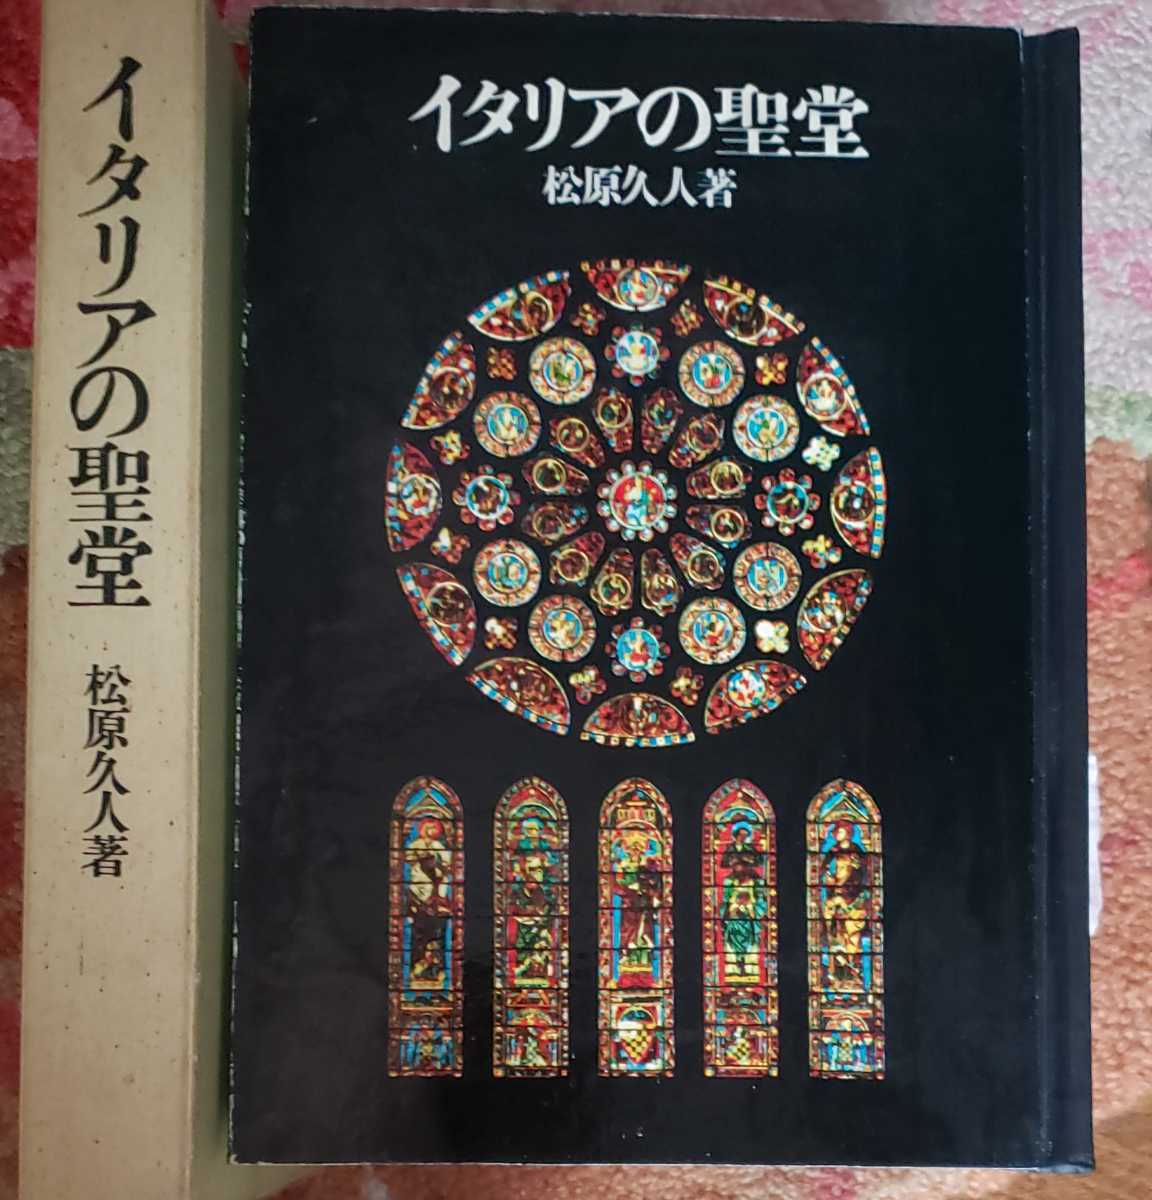 〈初版〉イタリアの聖堂 東京大学 1972 ステンドグラス クラシック 大聖堂【管理番号mtscp本1831】_画像1